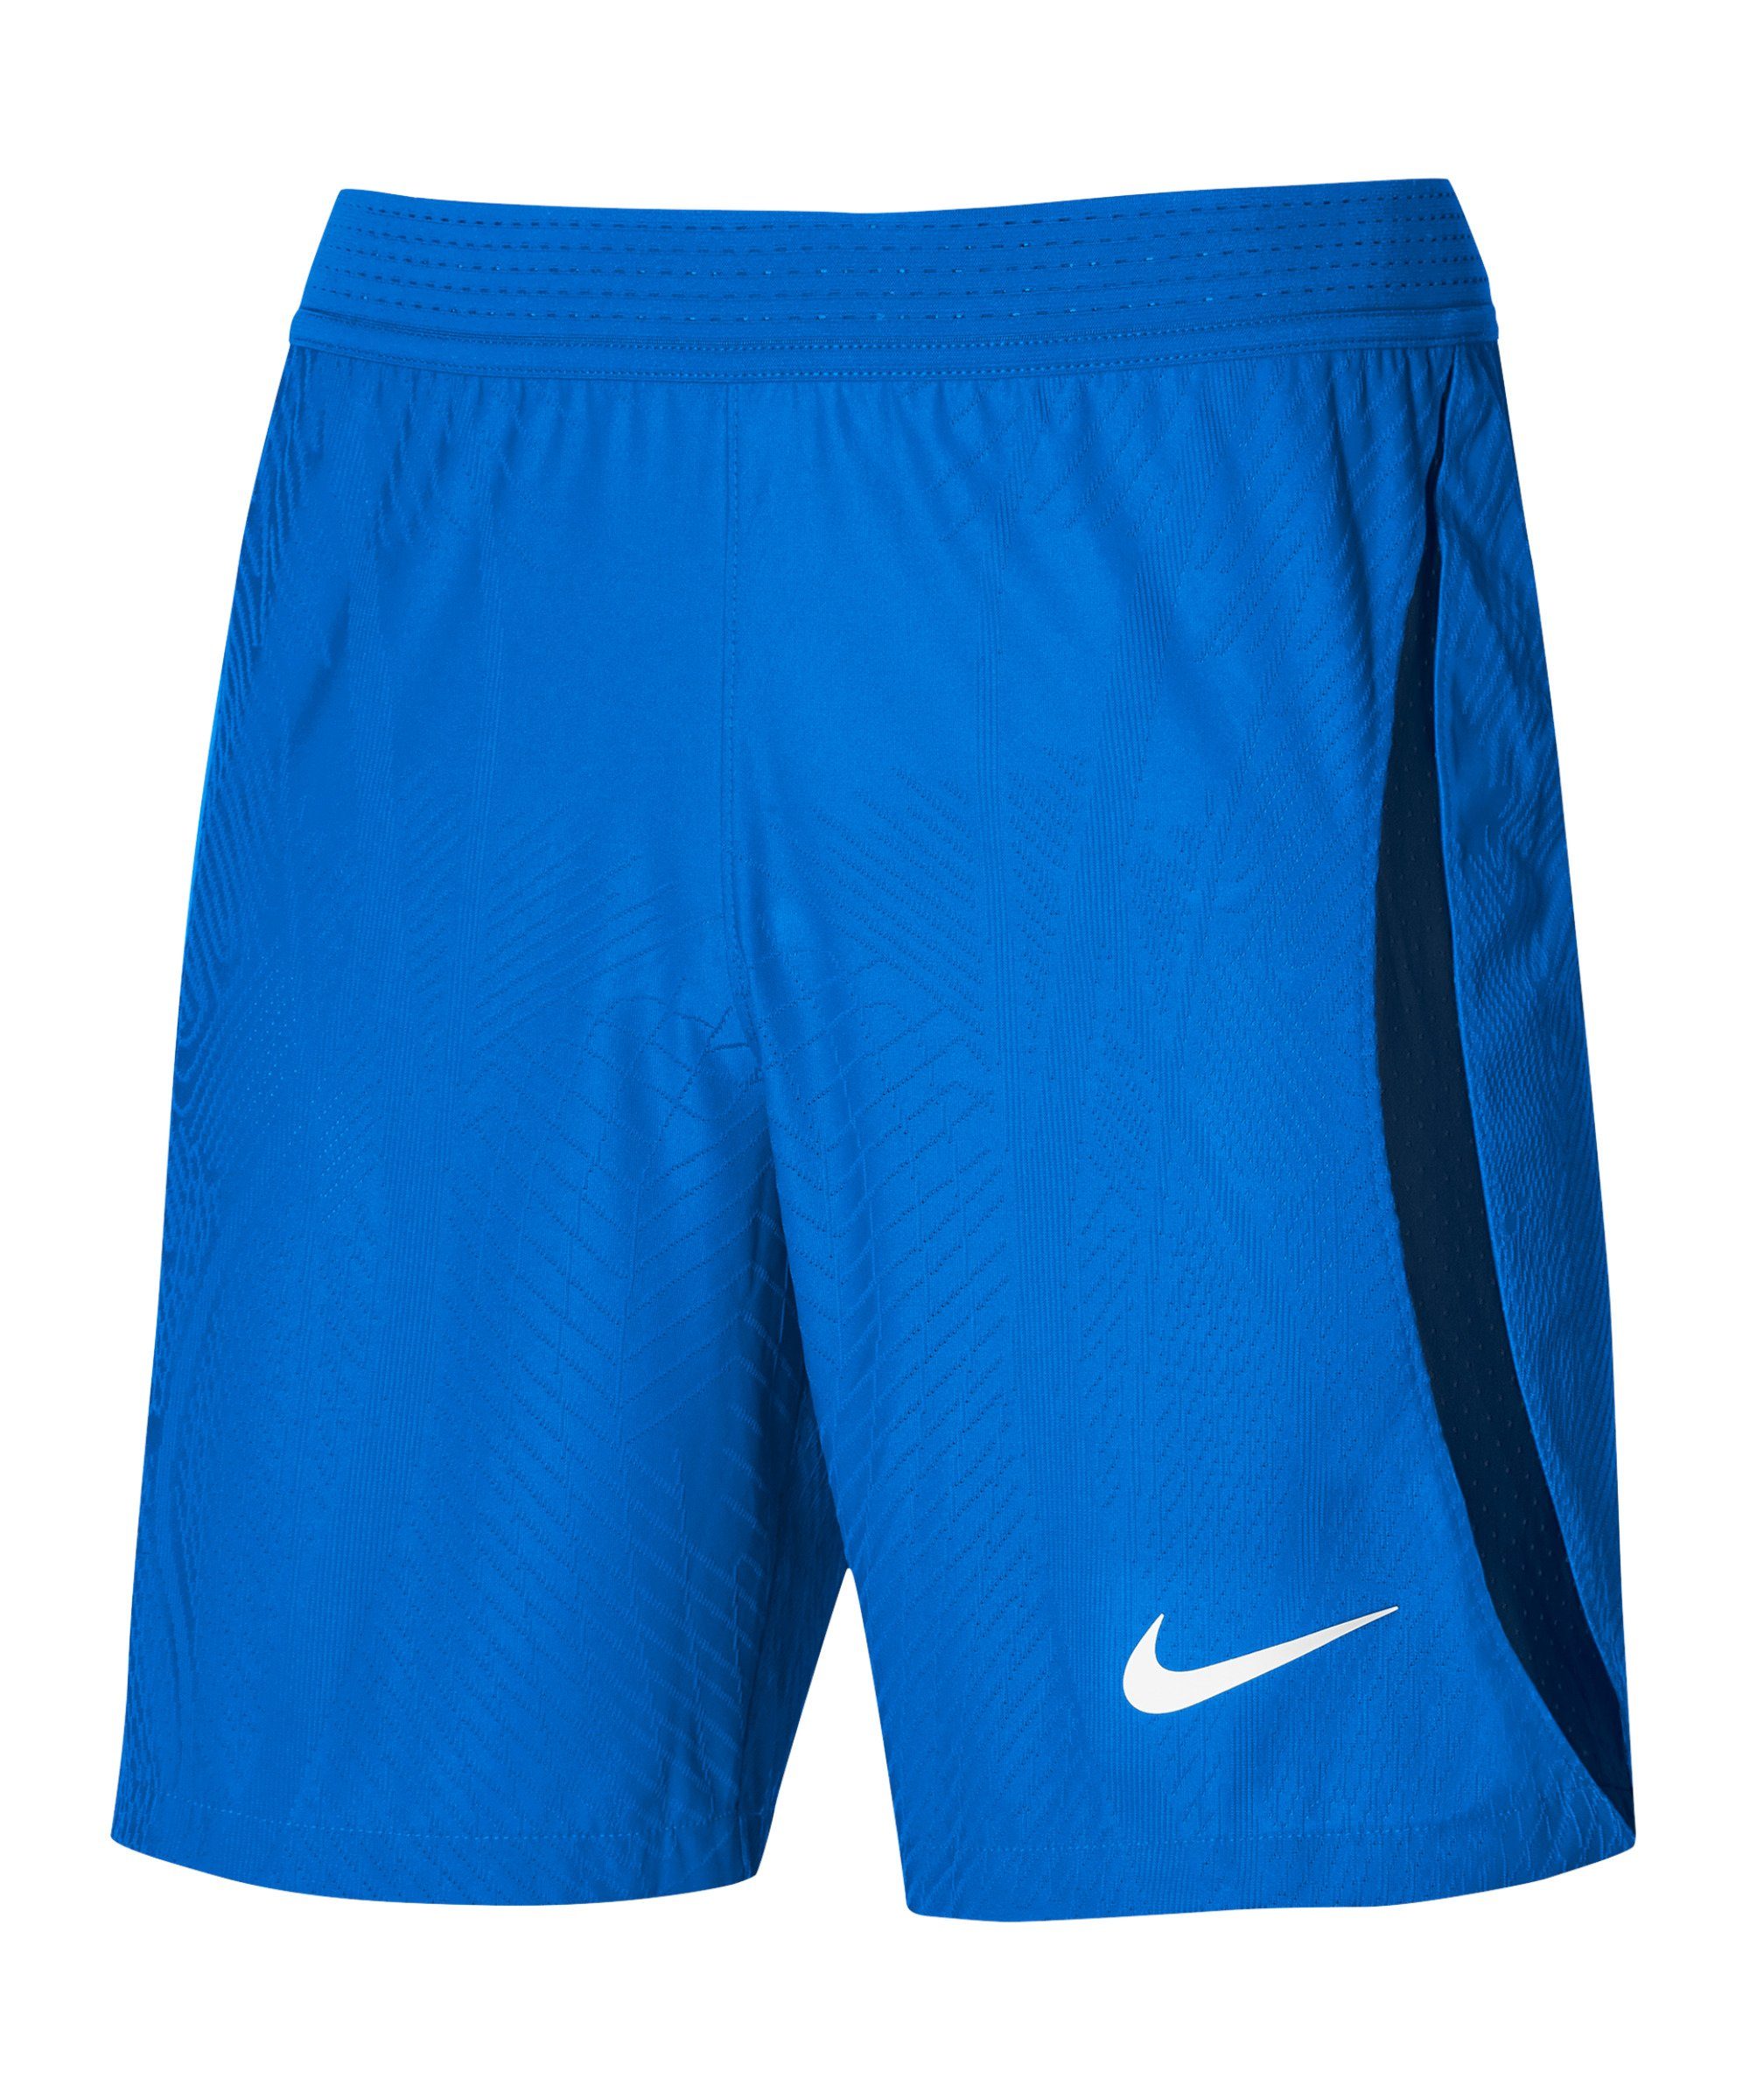 IV Short dunkelblaublauweiss Sporthose Nike Vaporknit ADV